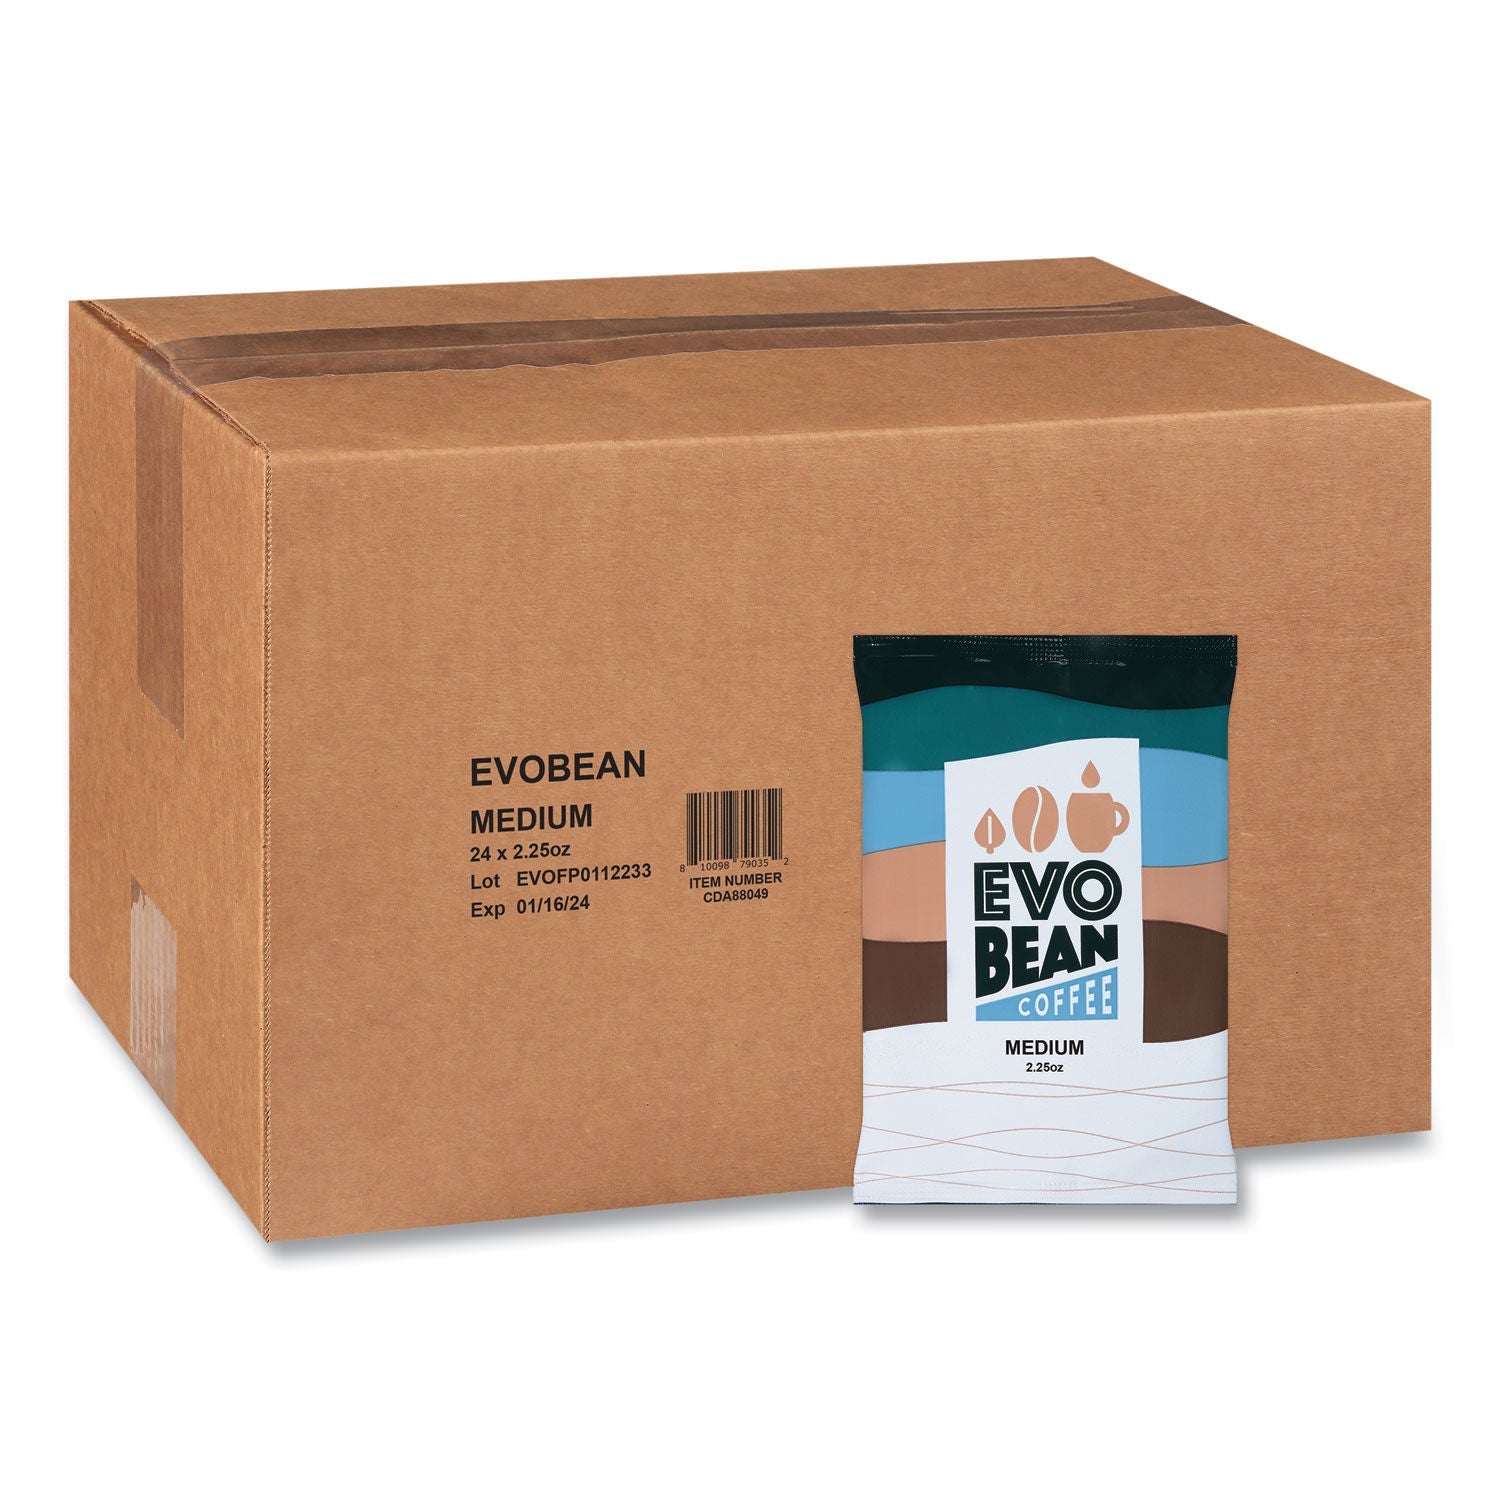 Evobean Medium Coffee Whole Bean 2 Lb Box